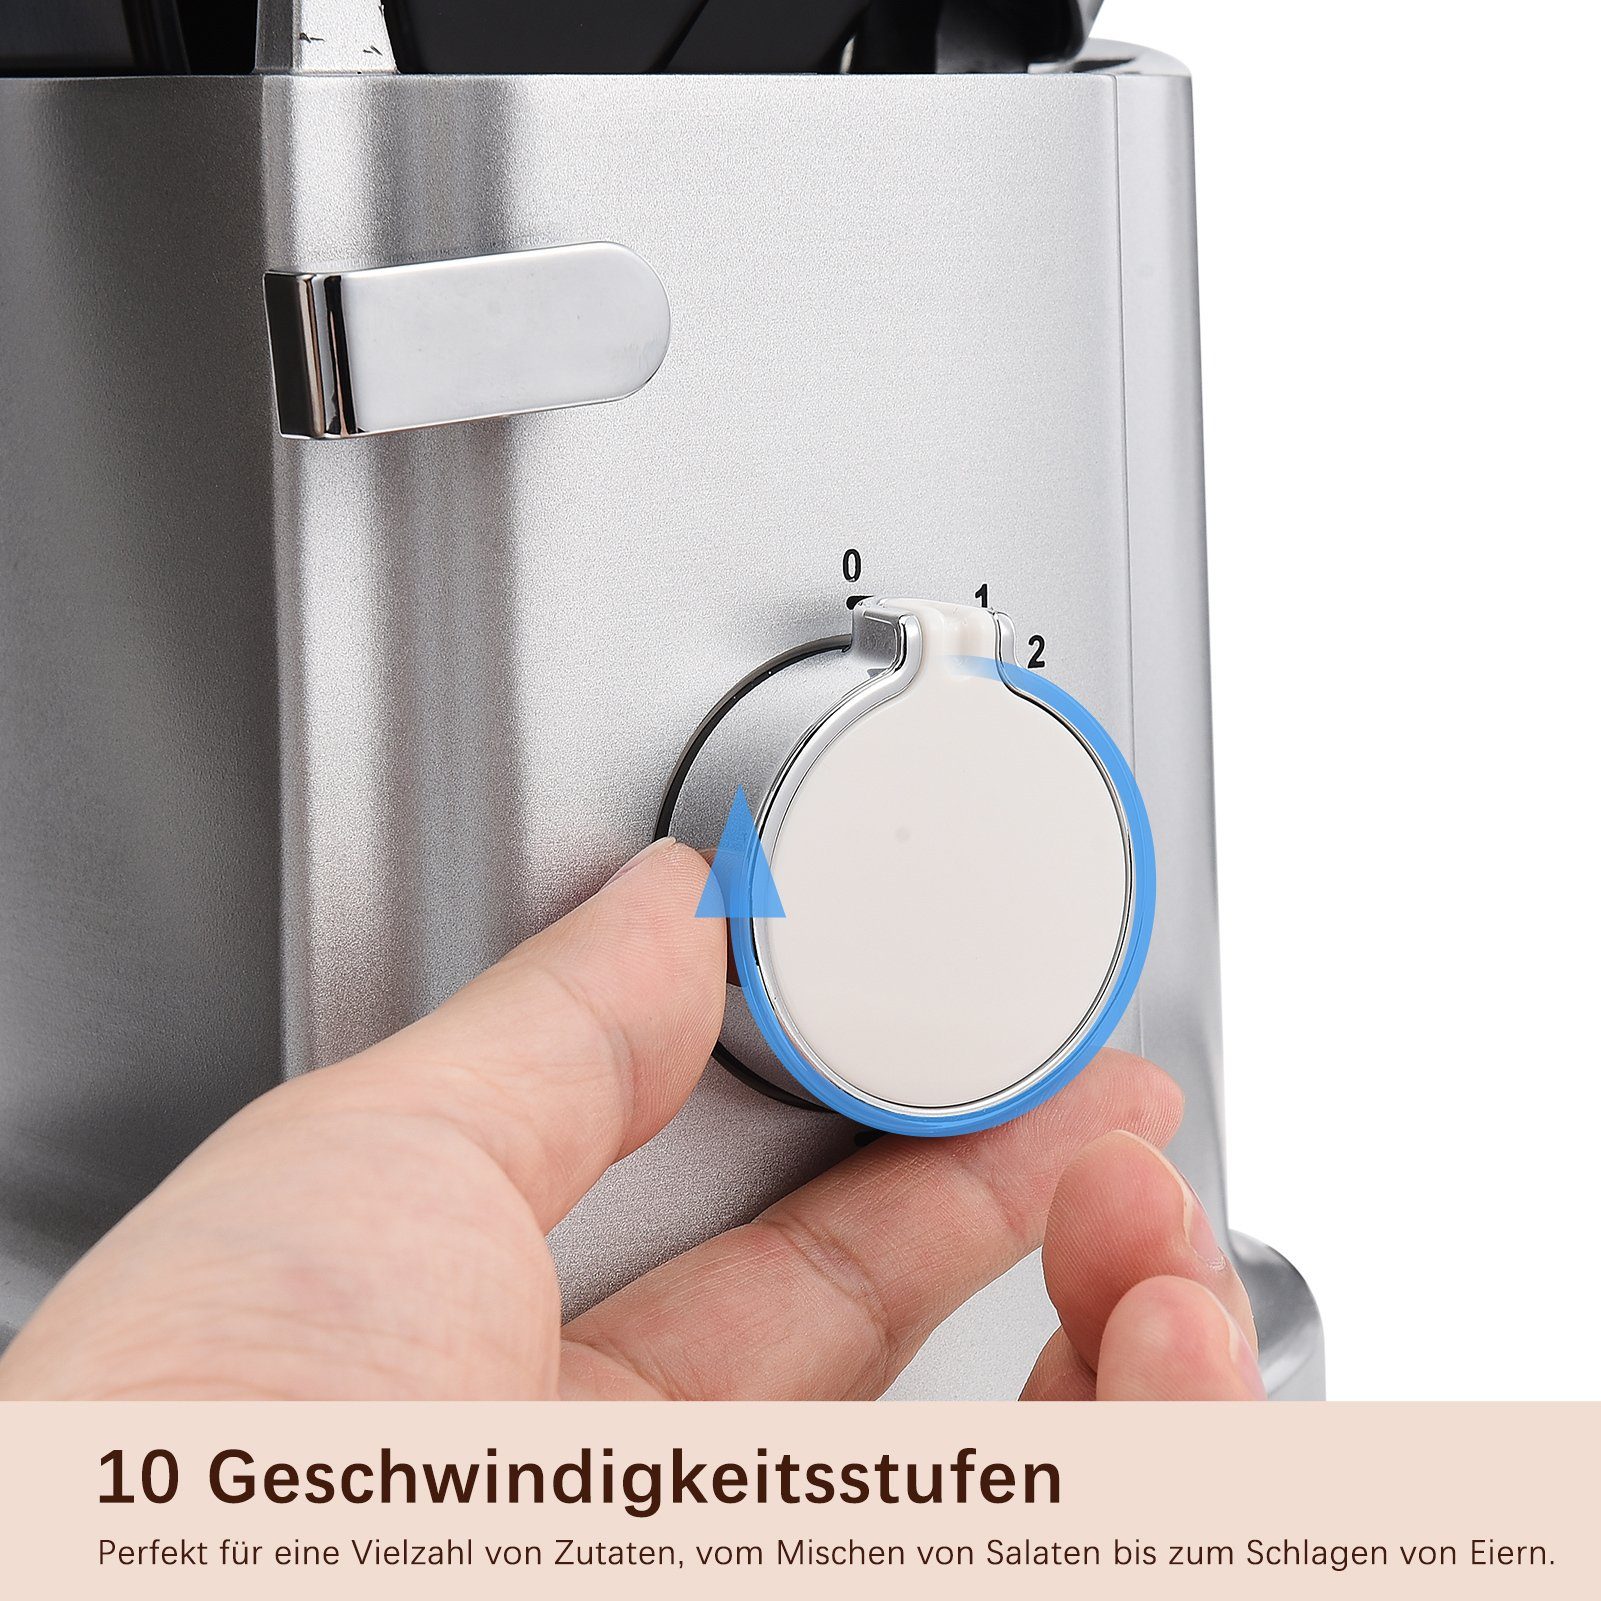 FUROKOY Küchenmaschine mit Kochfunktion Mixer Silber Maschine Küchenmaschine Multifunktional Haushaltsgeräte Kleine